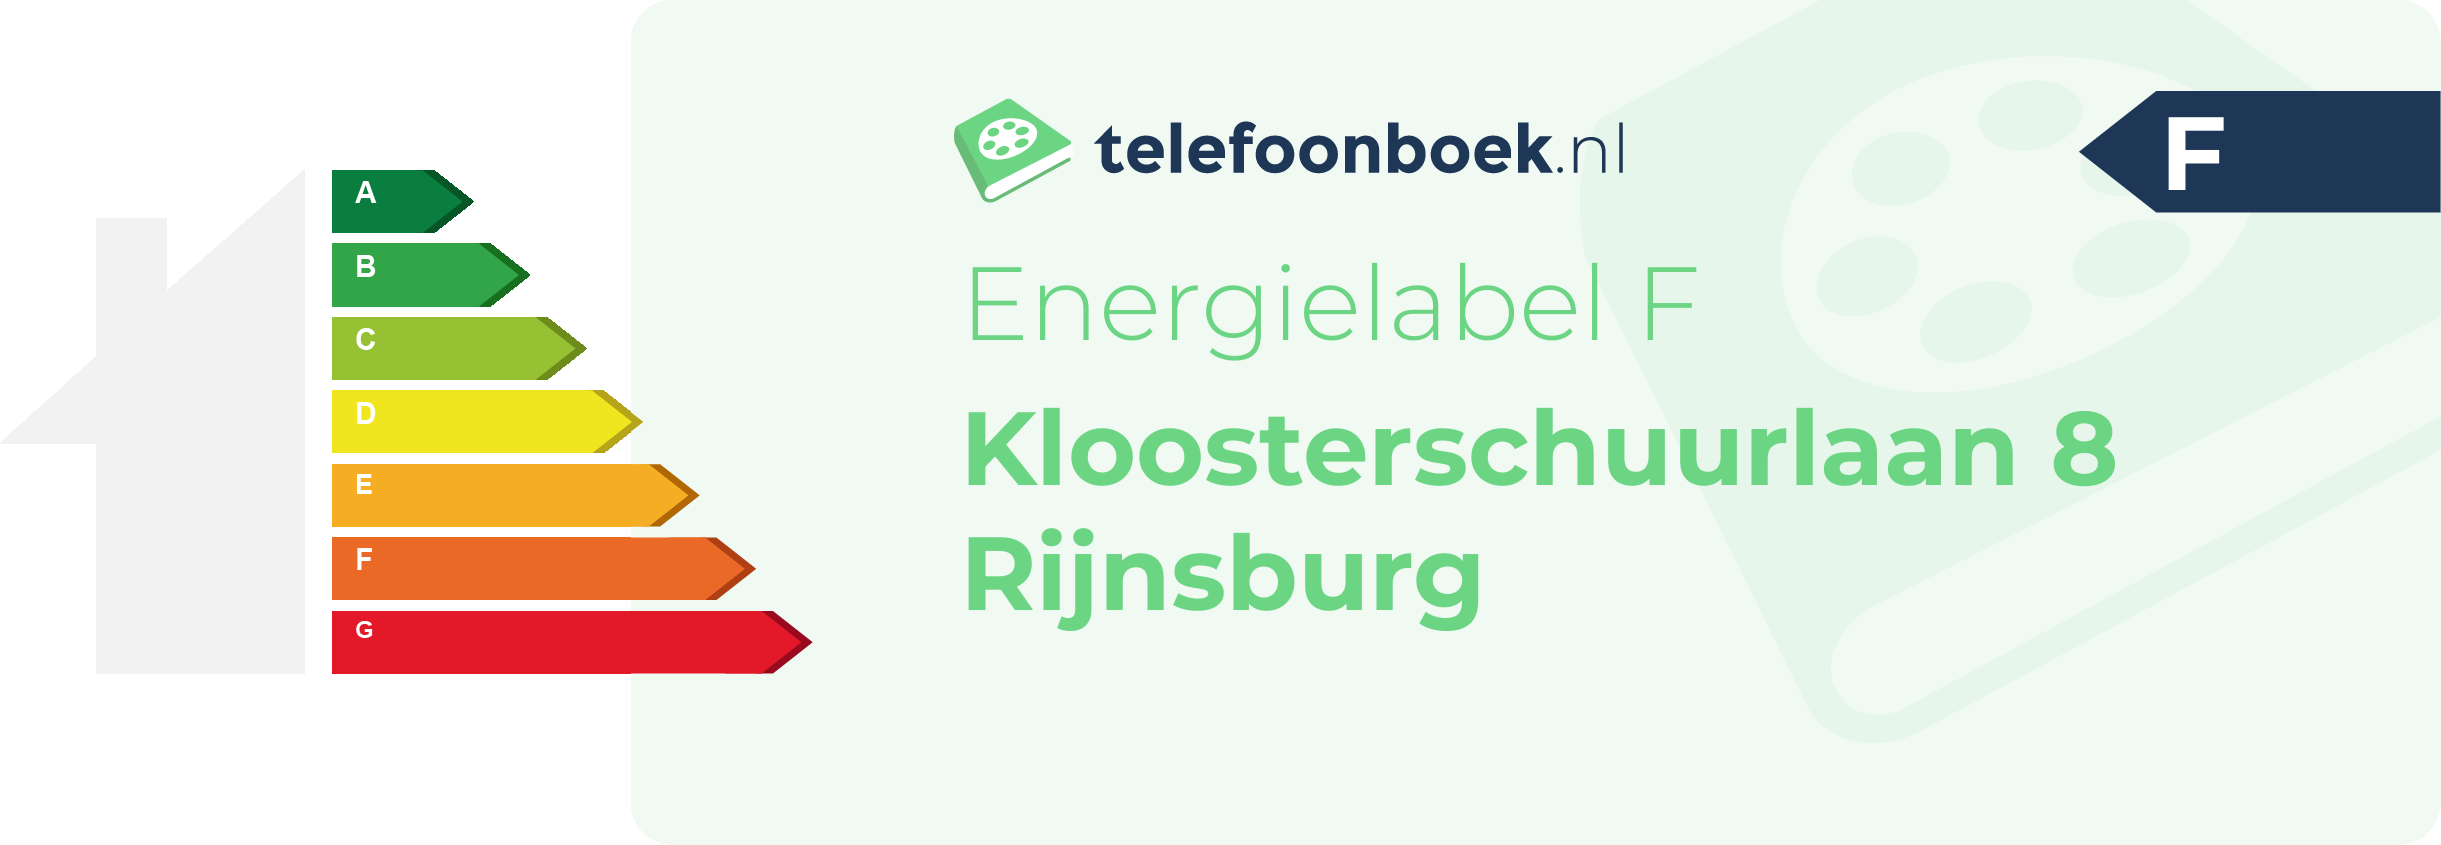 Energielabel Kloosterschuurlaan 8 Rijnsburg